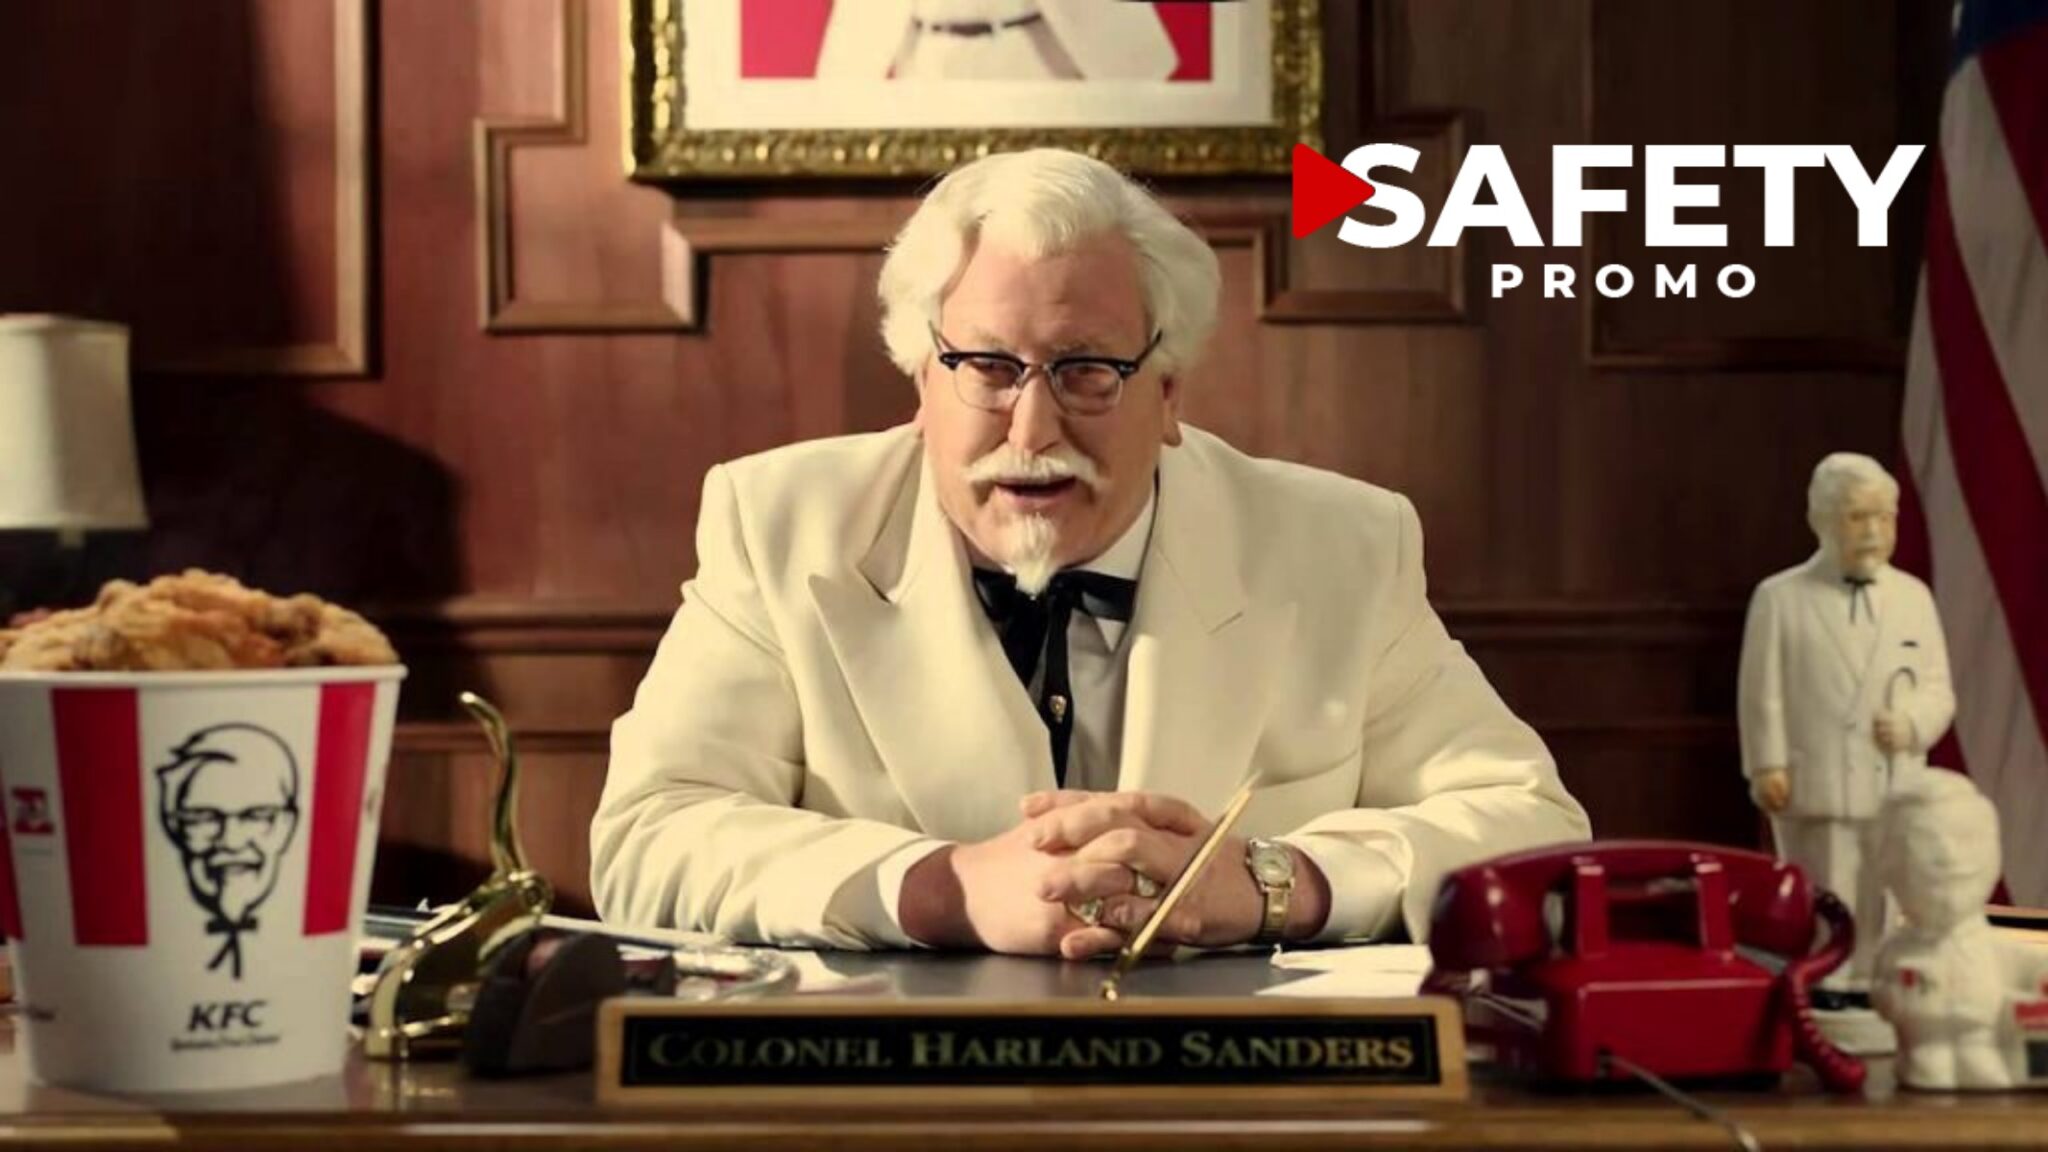 Découvrez l’histoire insolite du colonel Harland Sanders, la figure emblématique de KFC